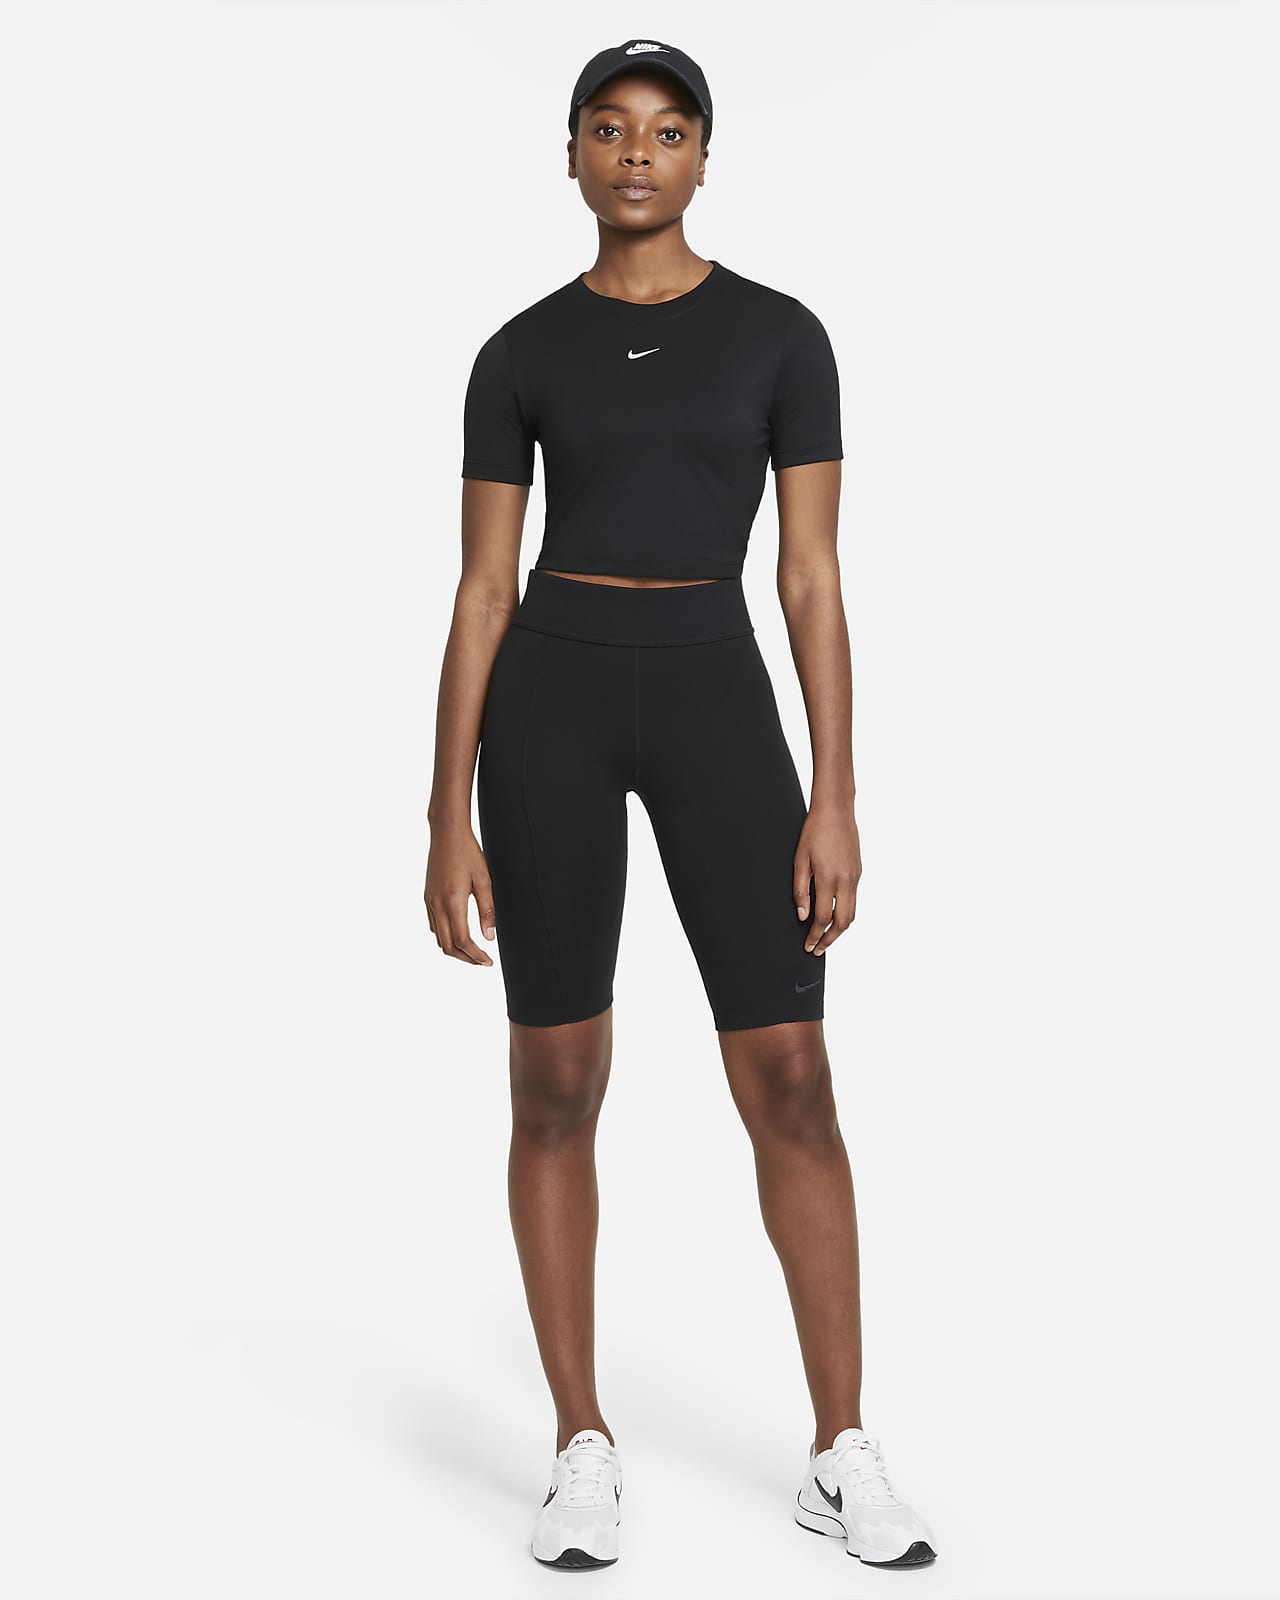 Nike Women's Crop-Top. Nike LU